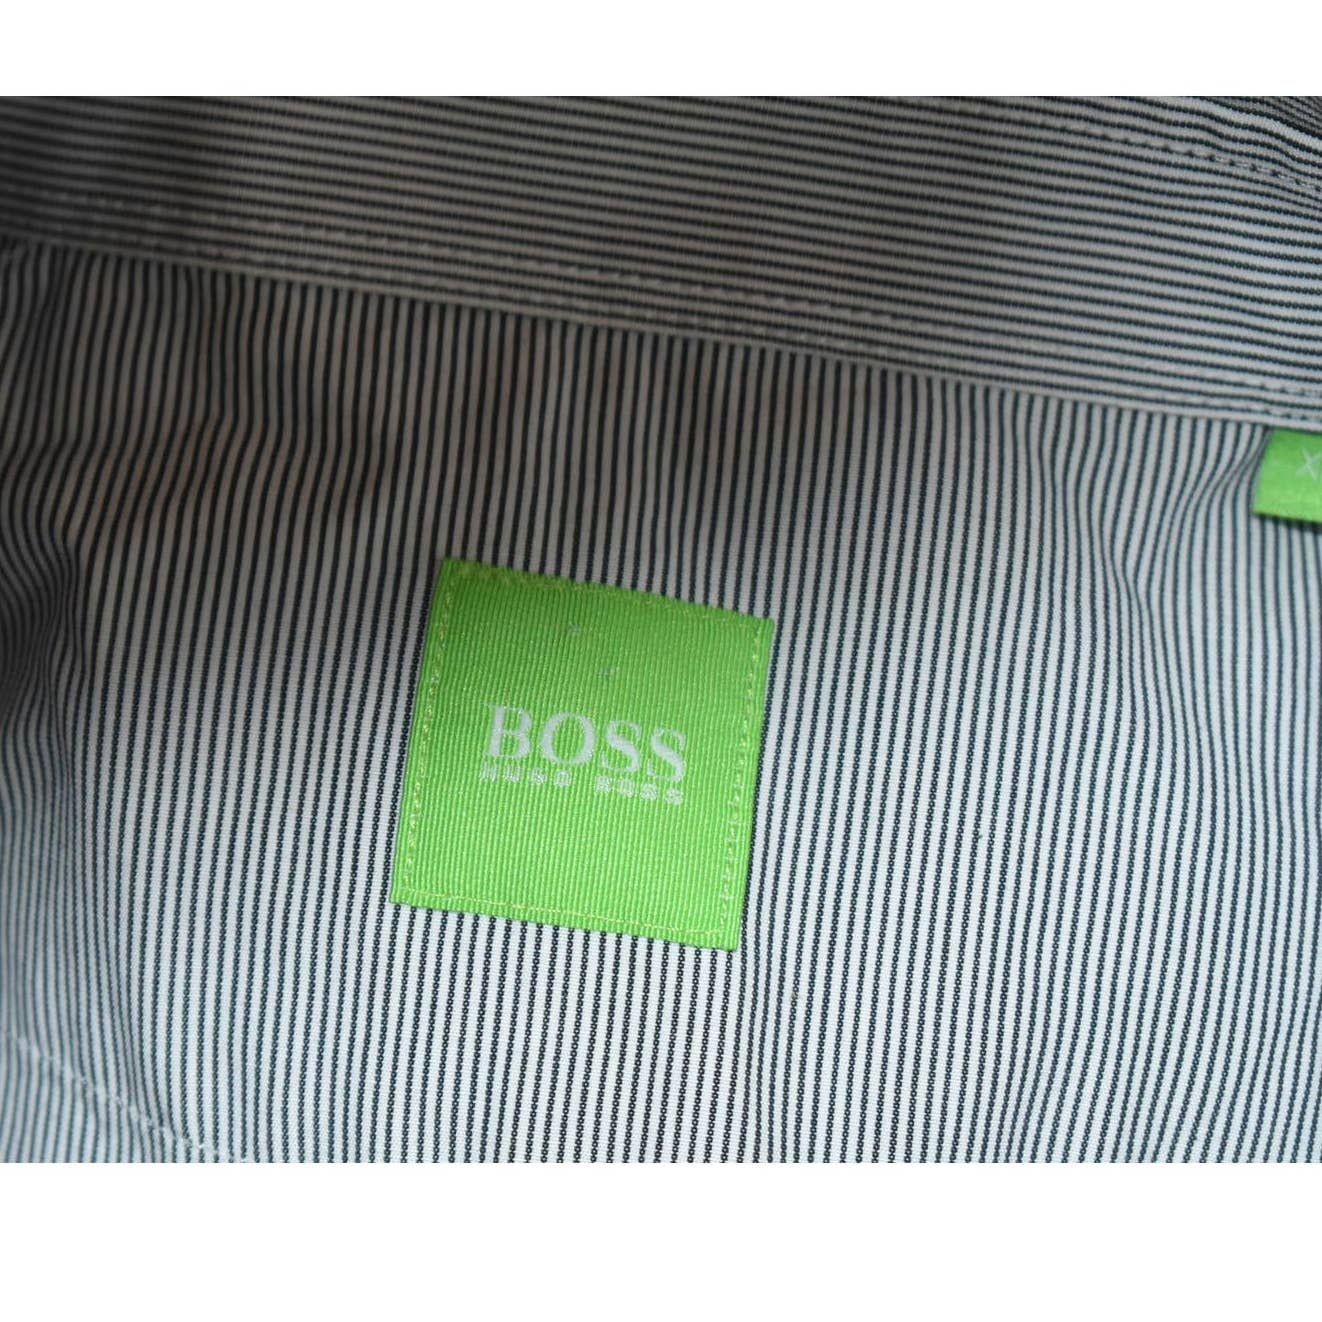 BOSS Hugo Boss Navy White Pinstripe Button Up Shirt - XL